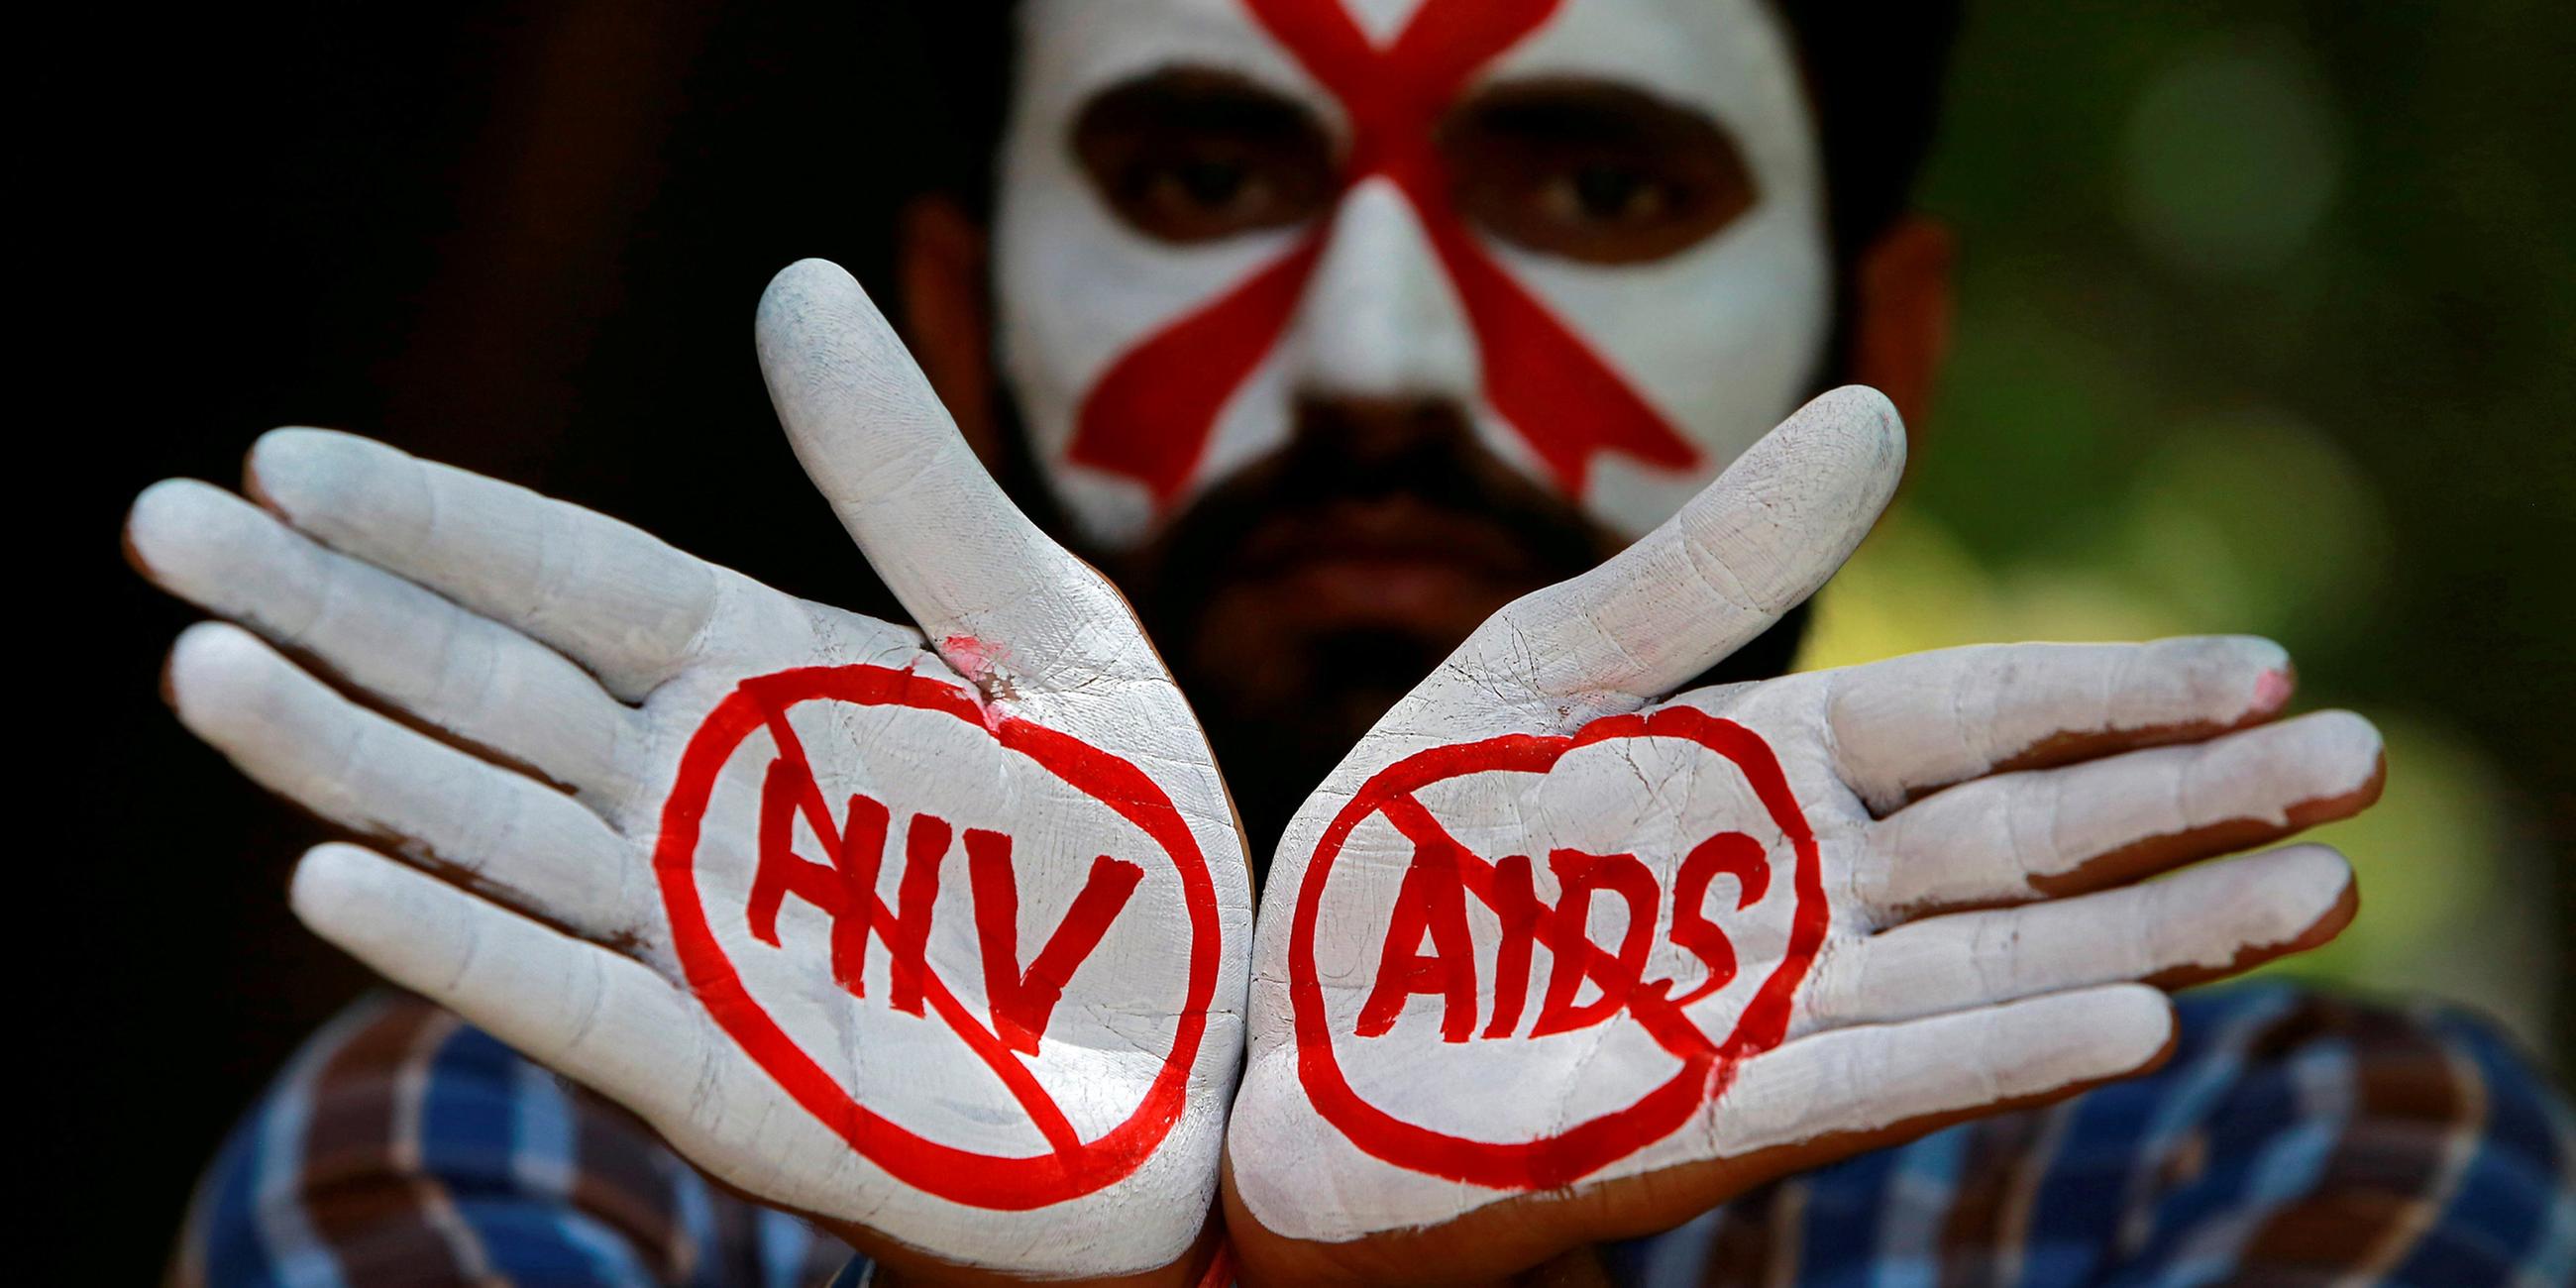 Indischer Student mit Aids/HIV-Zeichen auf den Händen.